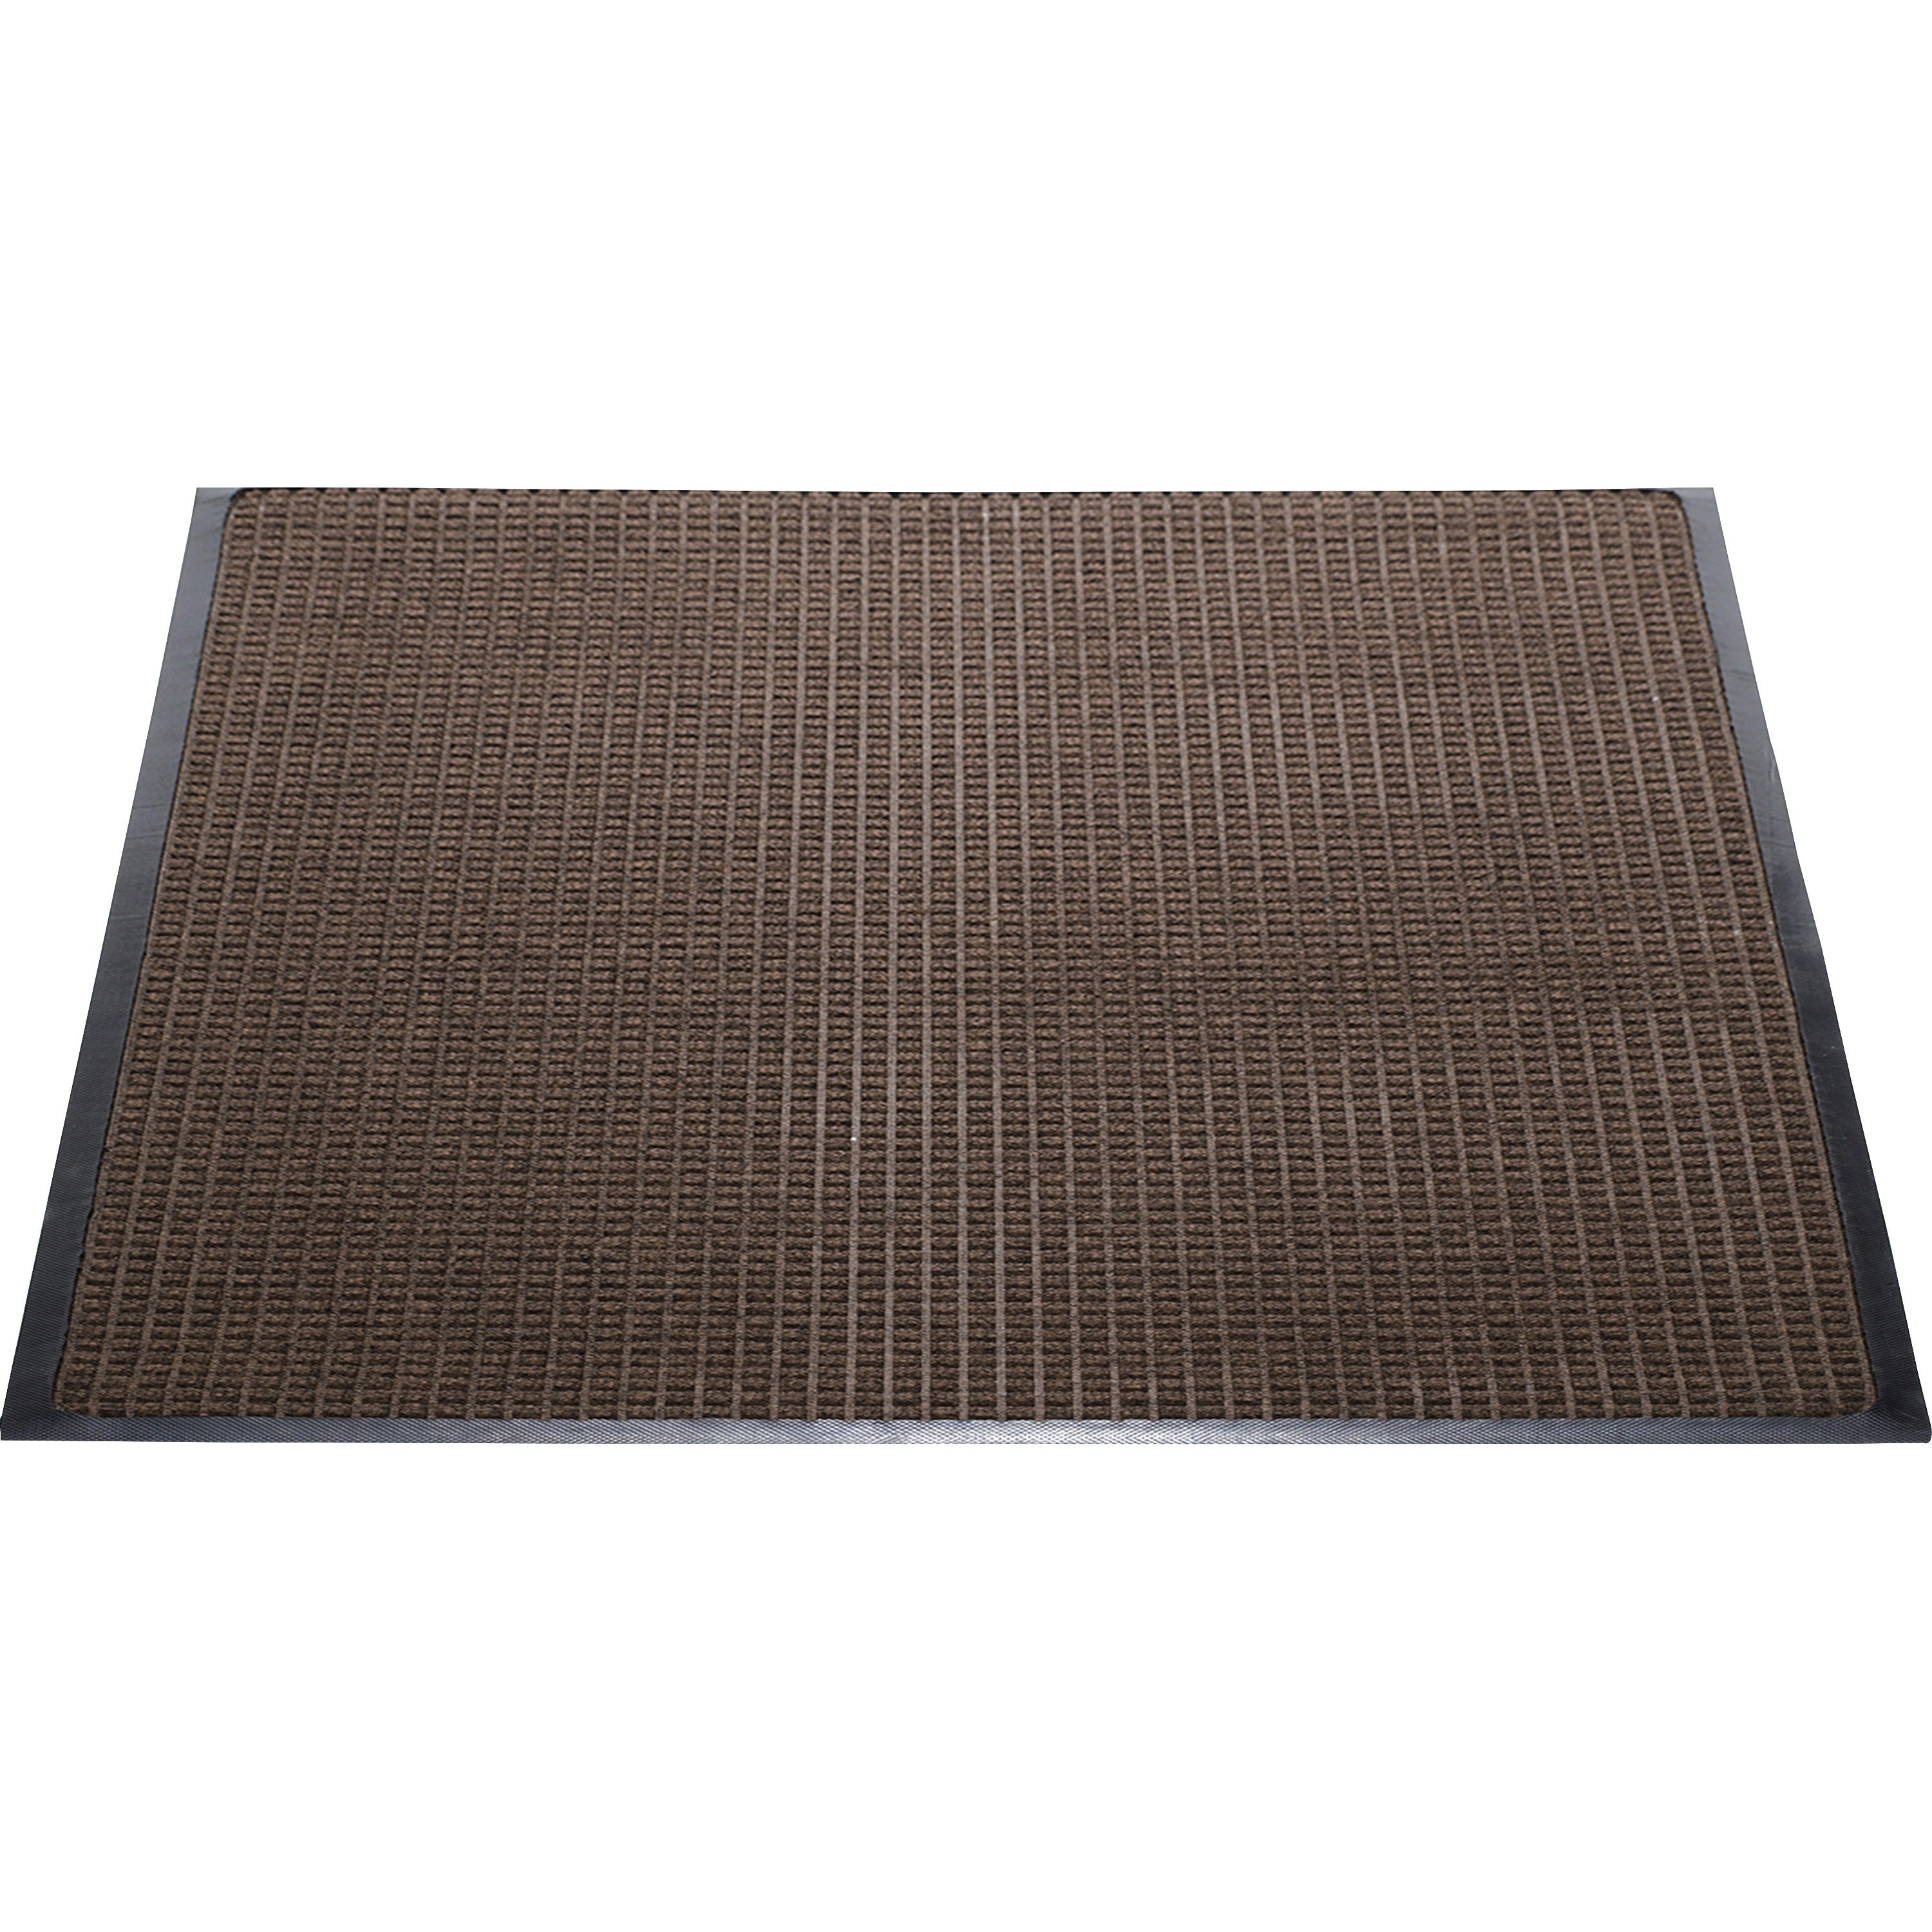 Genuine Joe Waterguard Wiper Scraper Floor Mats - Carpeted Floor, Indoor, Outdoor - 72" Length x 48" Width - Polypropylene - Brown - 1Each - 